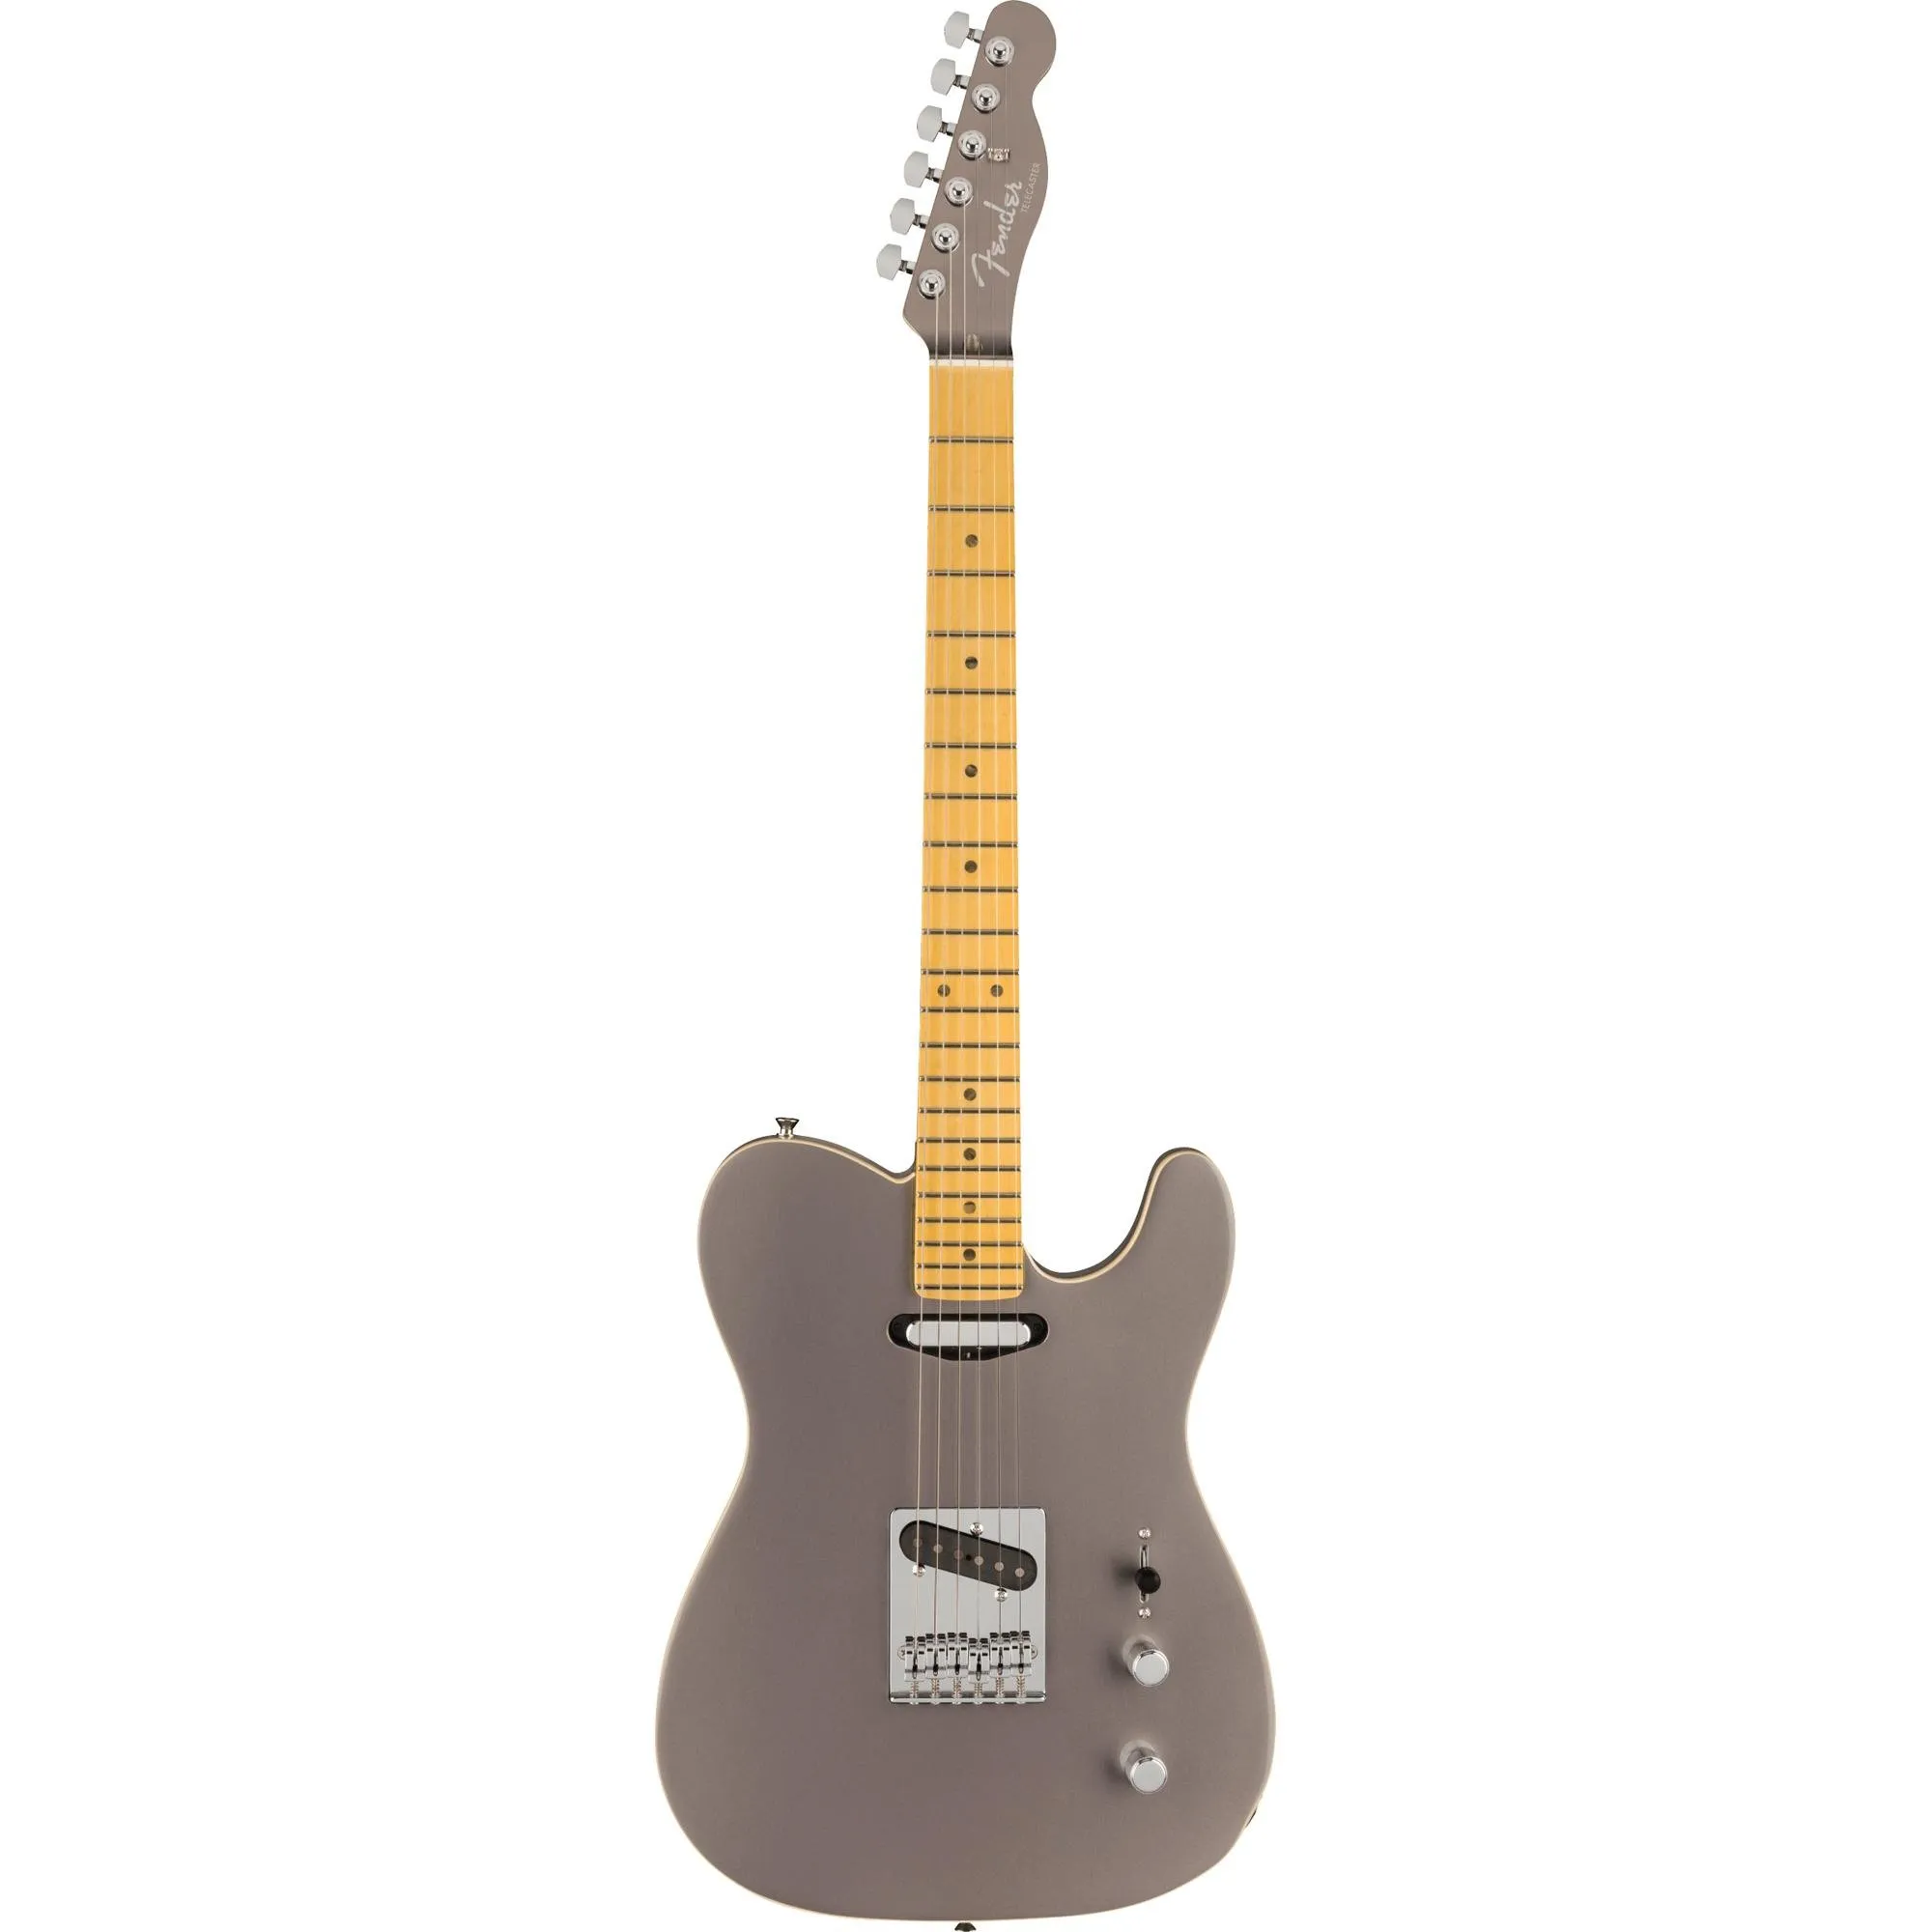 Guitarra Fender Telecaster Aerodyne Special Dolphin Gray por 10.751,99 à vista no boleto/pix ou parcele em até 12x sem juros. Compre na loja Mundomax!